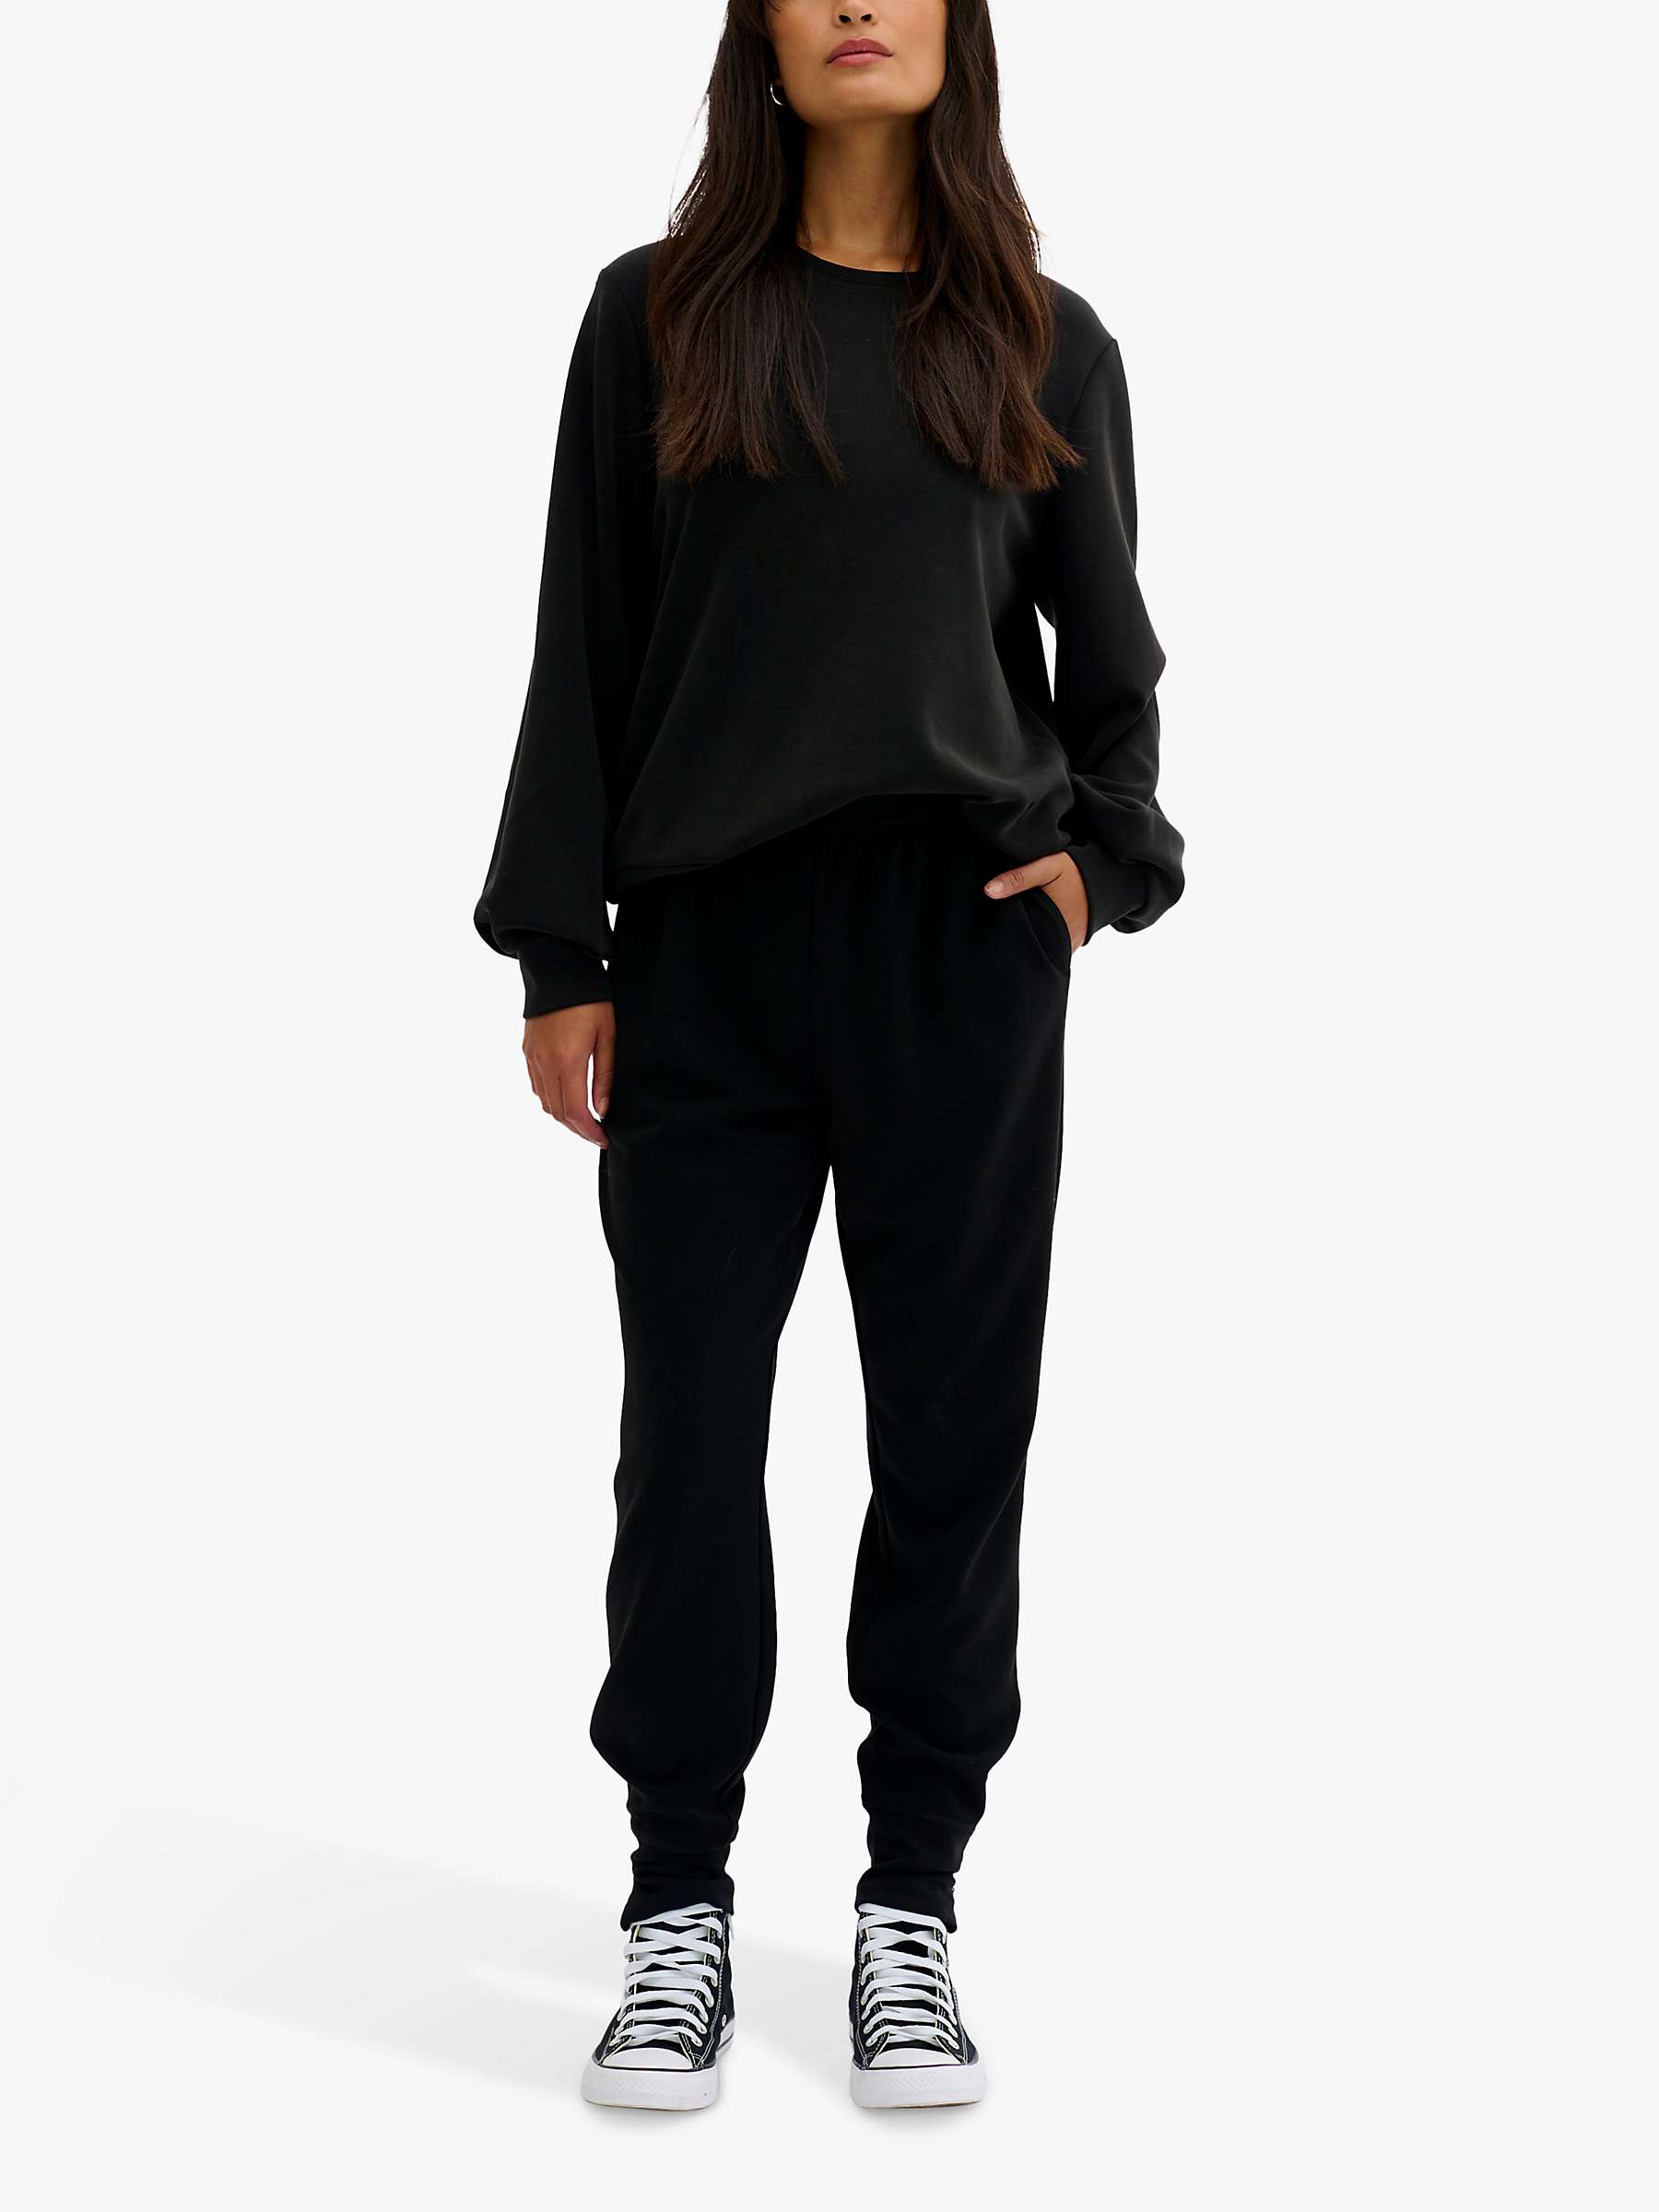 Buy MY ESSENTIAL WARDROBE Casual Fit Sweatshirt, Black Online at johnlewis.com